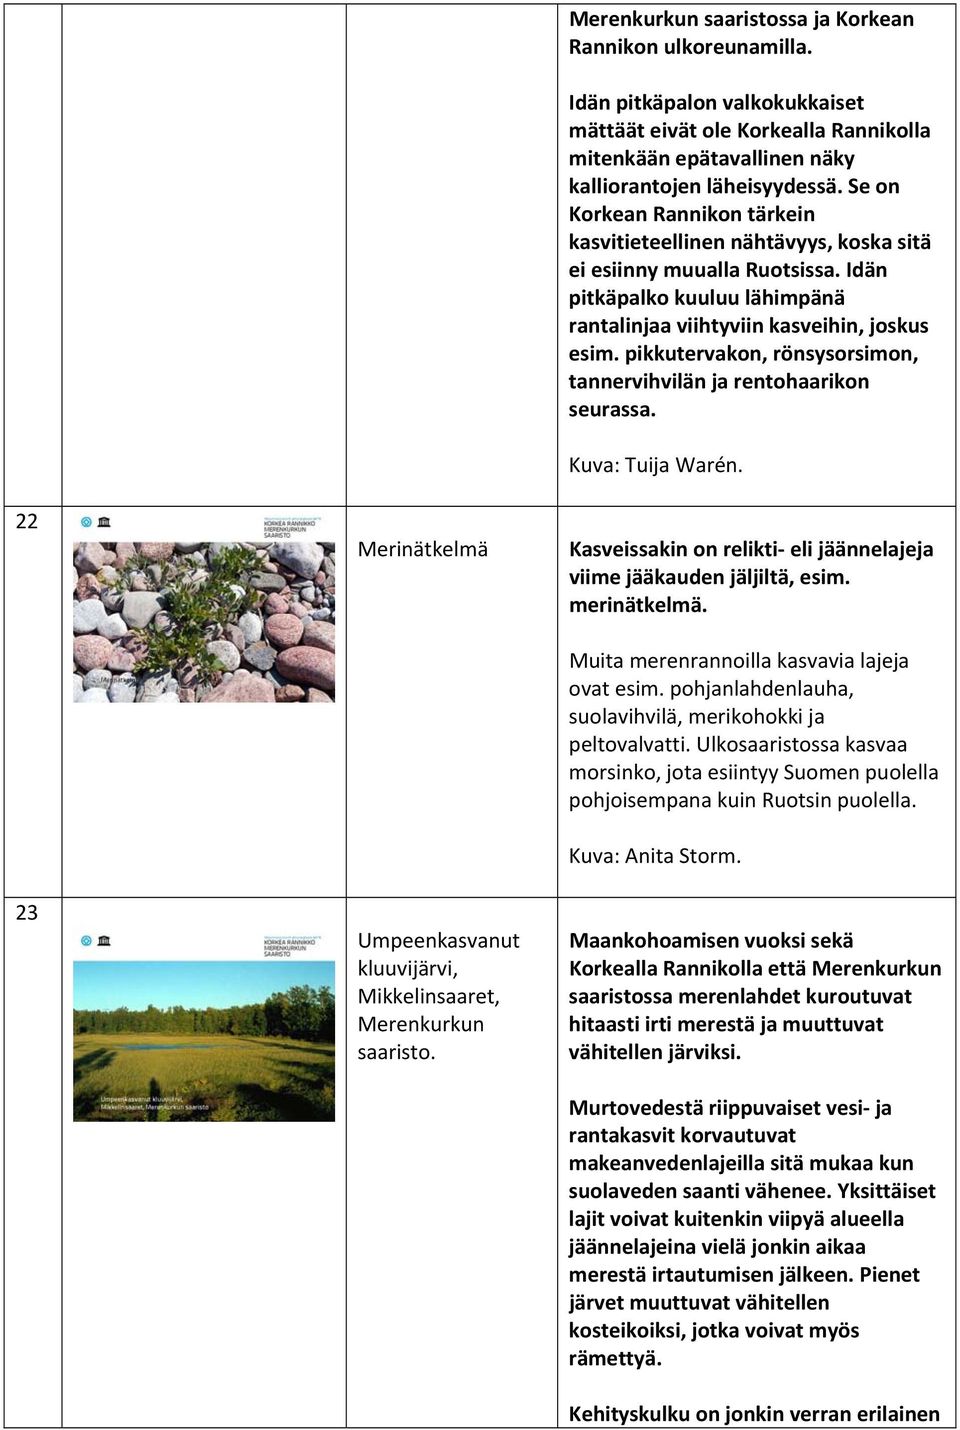 Se on Korkean Rannikon tärkein kasvitieteellinen nähtävyys, koska sitä ei esiinny muualla Ruotsissa. Idän pitkäpalko kuuluu lähimpänä rantalinjaa viihtyviin kasveihin, joskus esim.